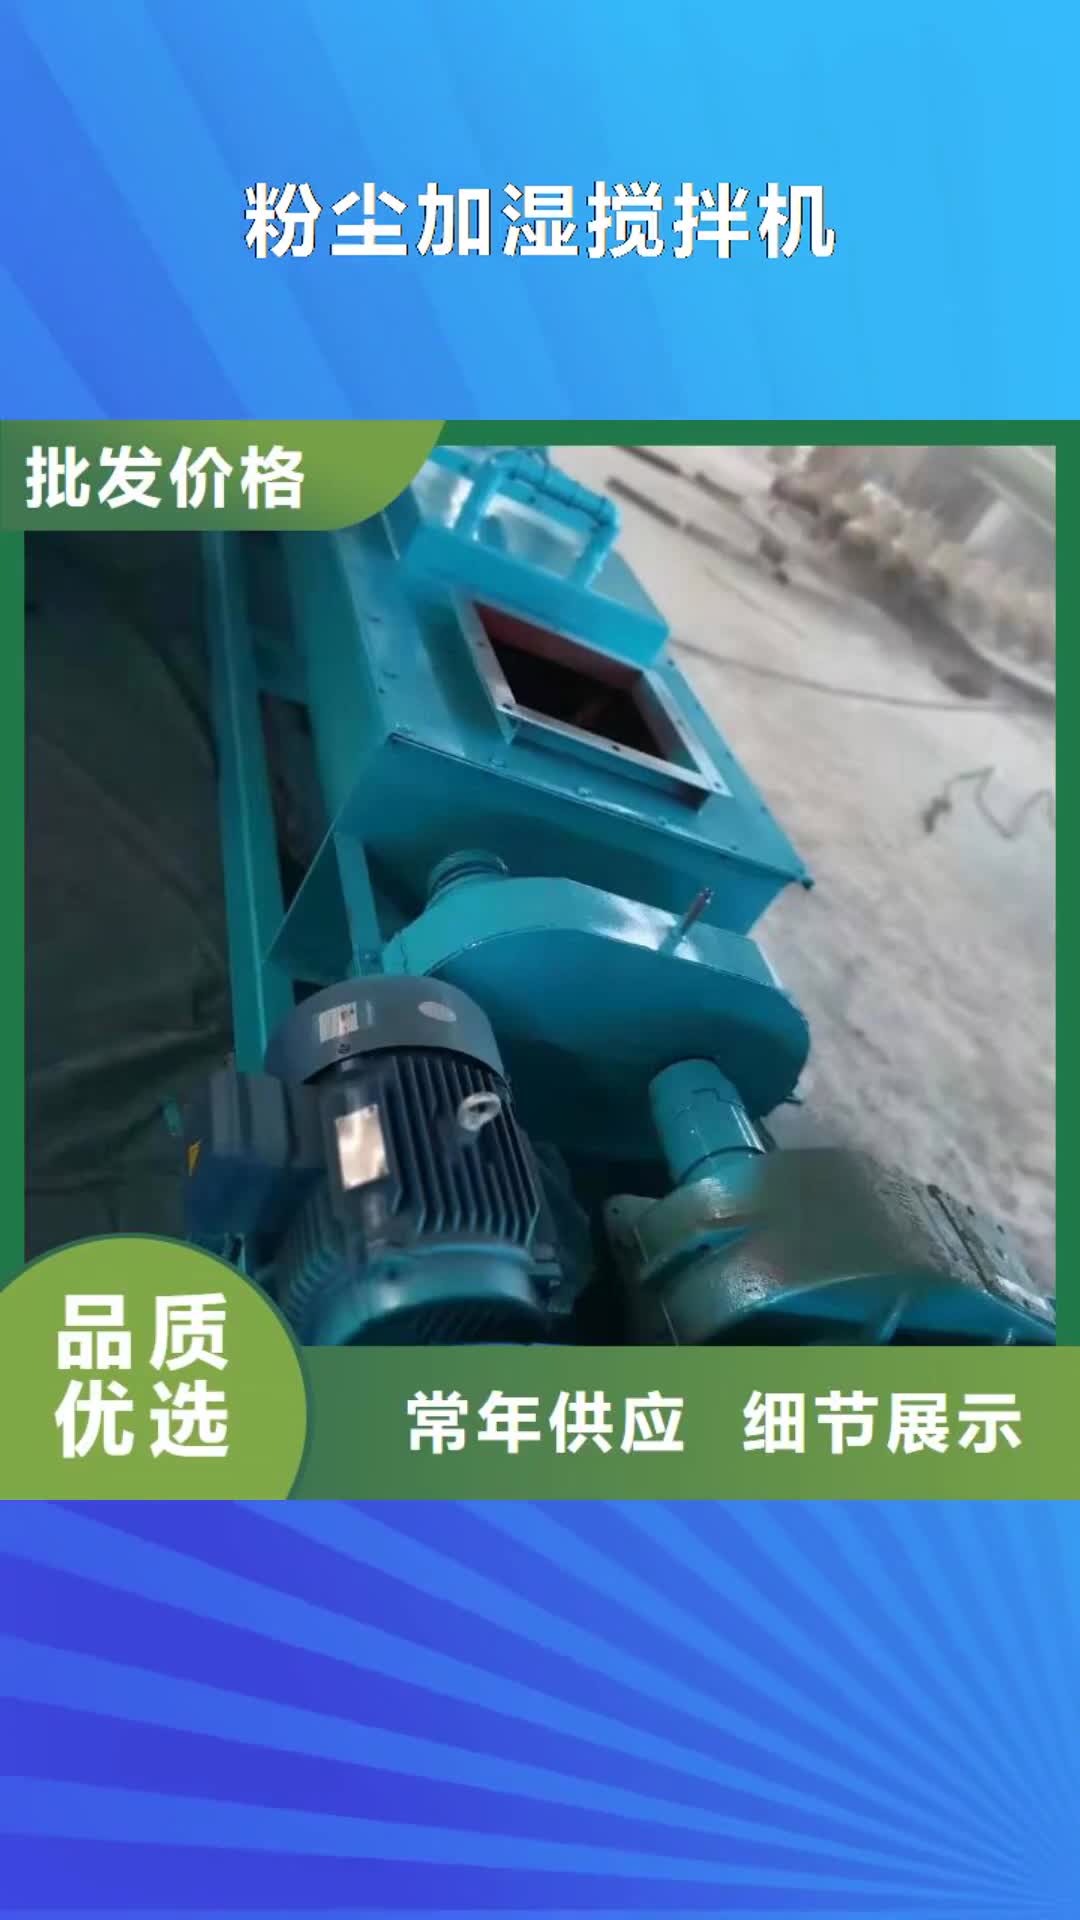 杭州 粉尘加湿搅拌机【螺旋输送机】符合行业标准